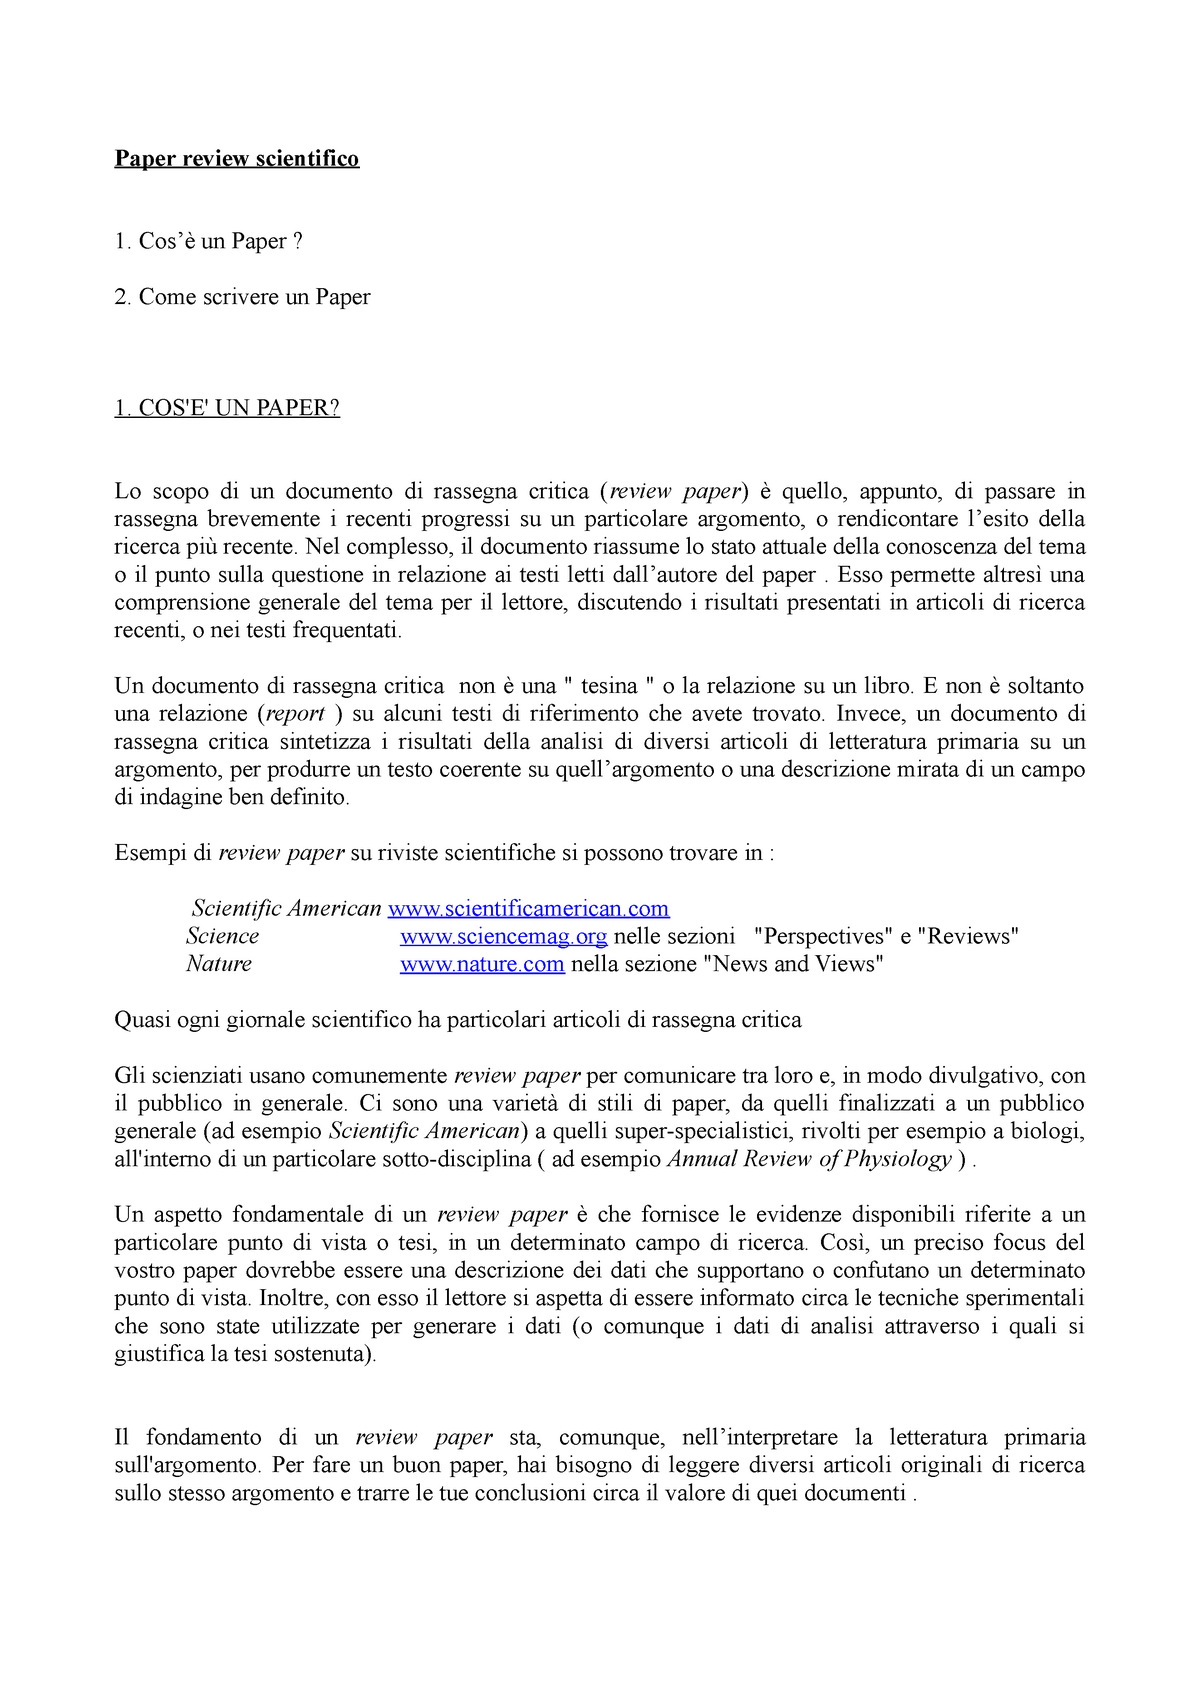 research paper in italiano